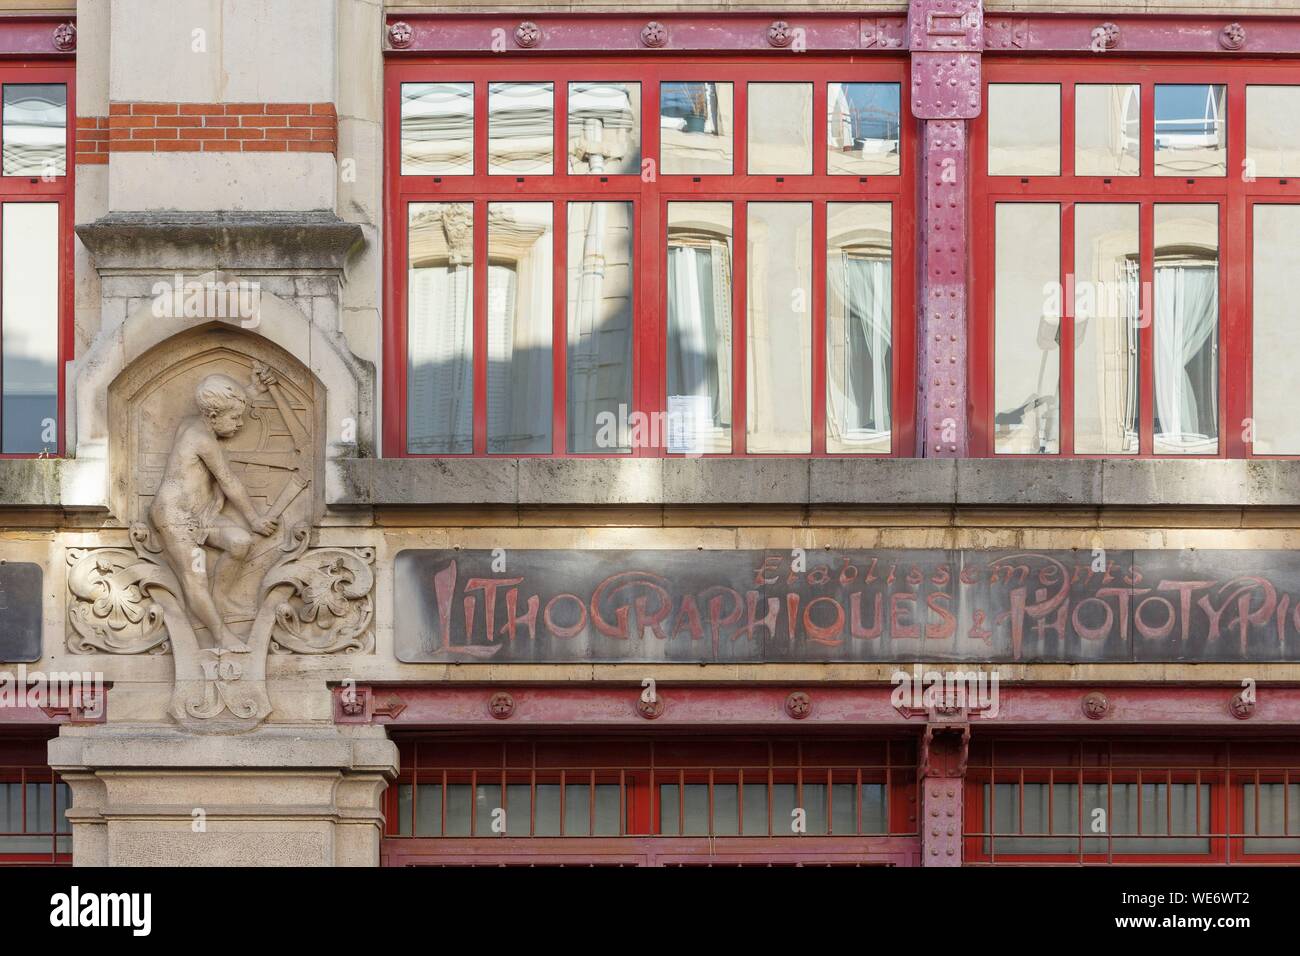 France, Meurthe et Moselle, Nancy, façade de l'Imprimerie Royer dans le style Art Nouveau par l'architecte de l'Ecole de Nancy (école de Nancy), Lucien Weissenburger en 1899-1900, rue Salpetriere s itué dans les bureaux d'aujourd'hui et appartements Banque D'Images